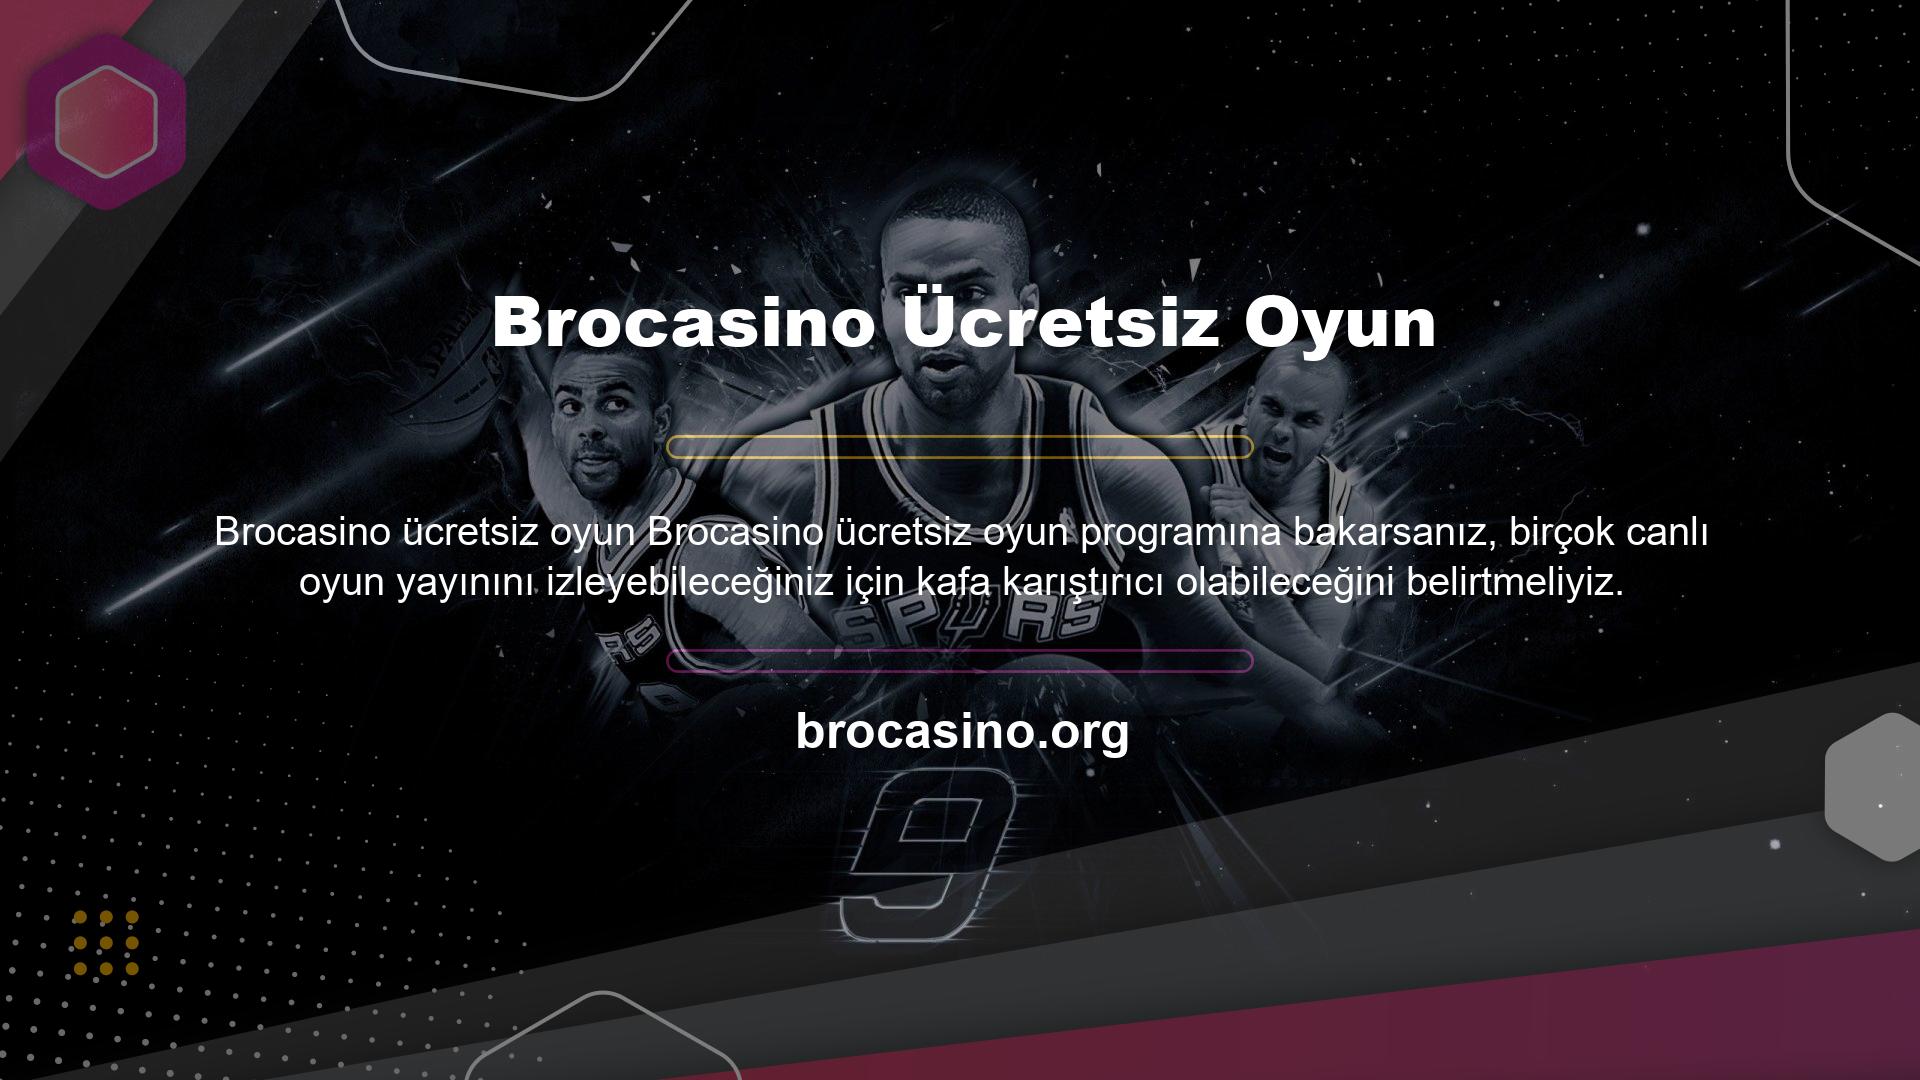 Brocasino web sitesinin ana yapısı kullanıcı odaklıdır ve oyun yayıncılığı düşünülerek çalışır